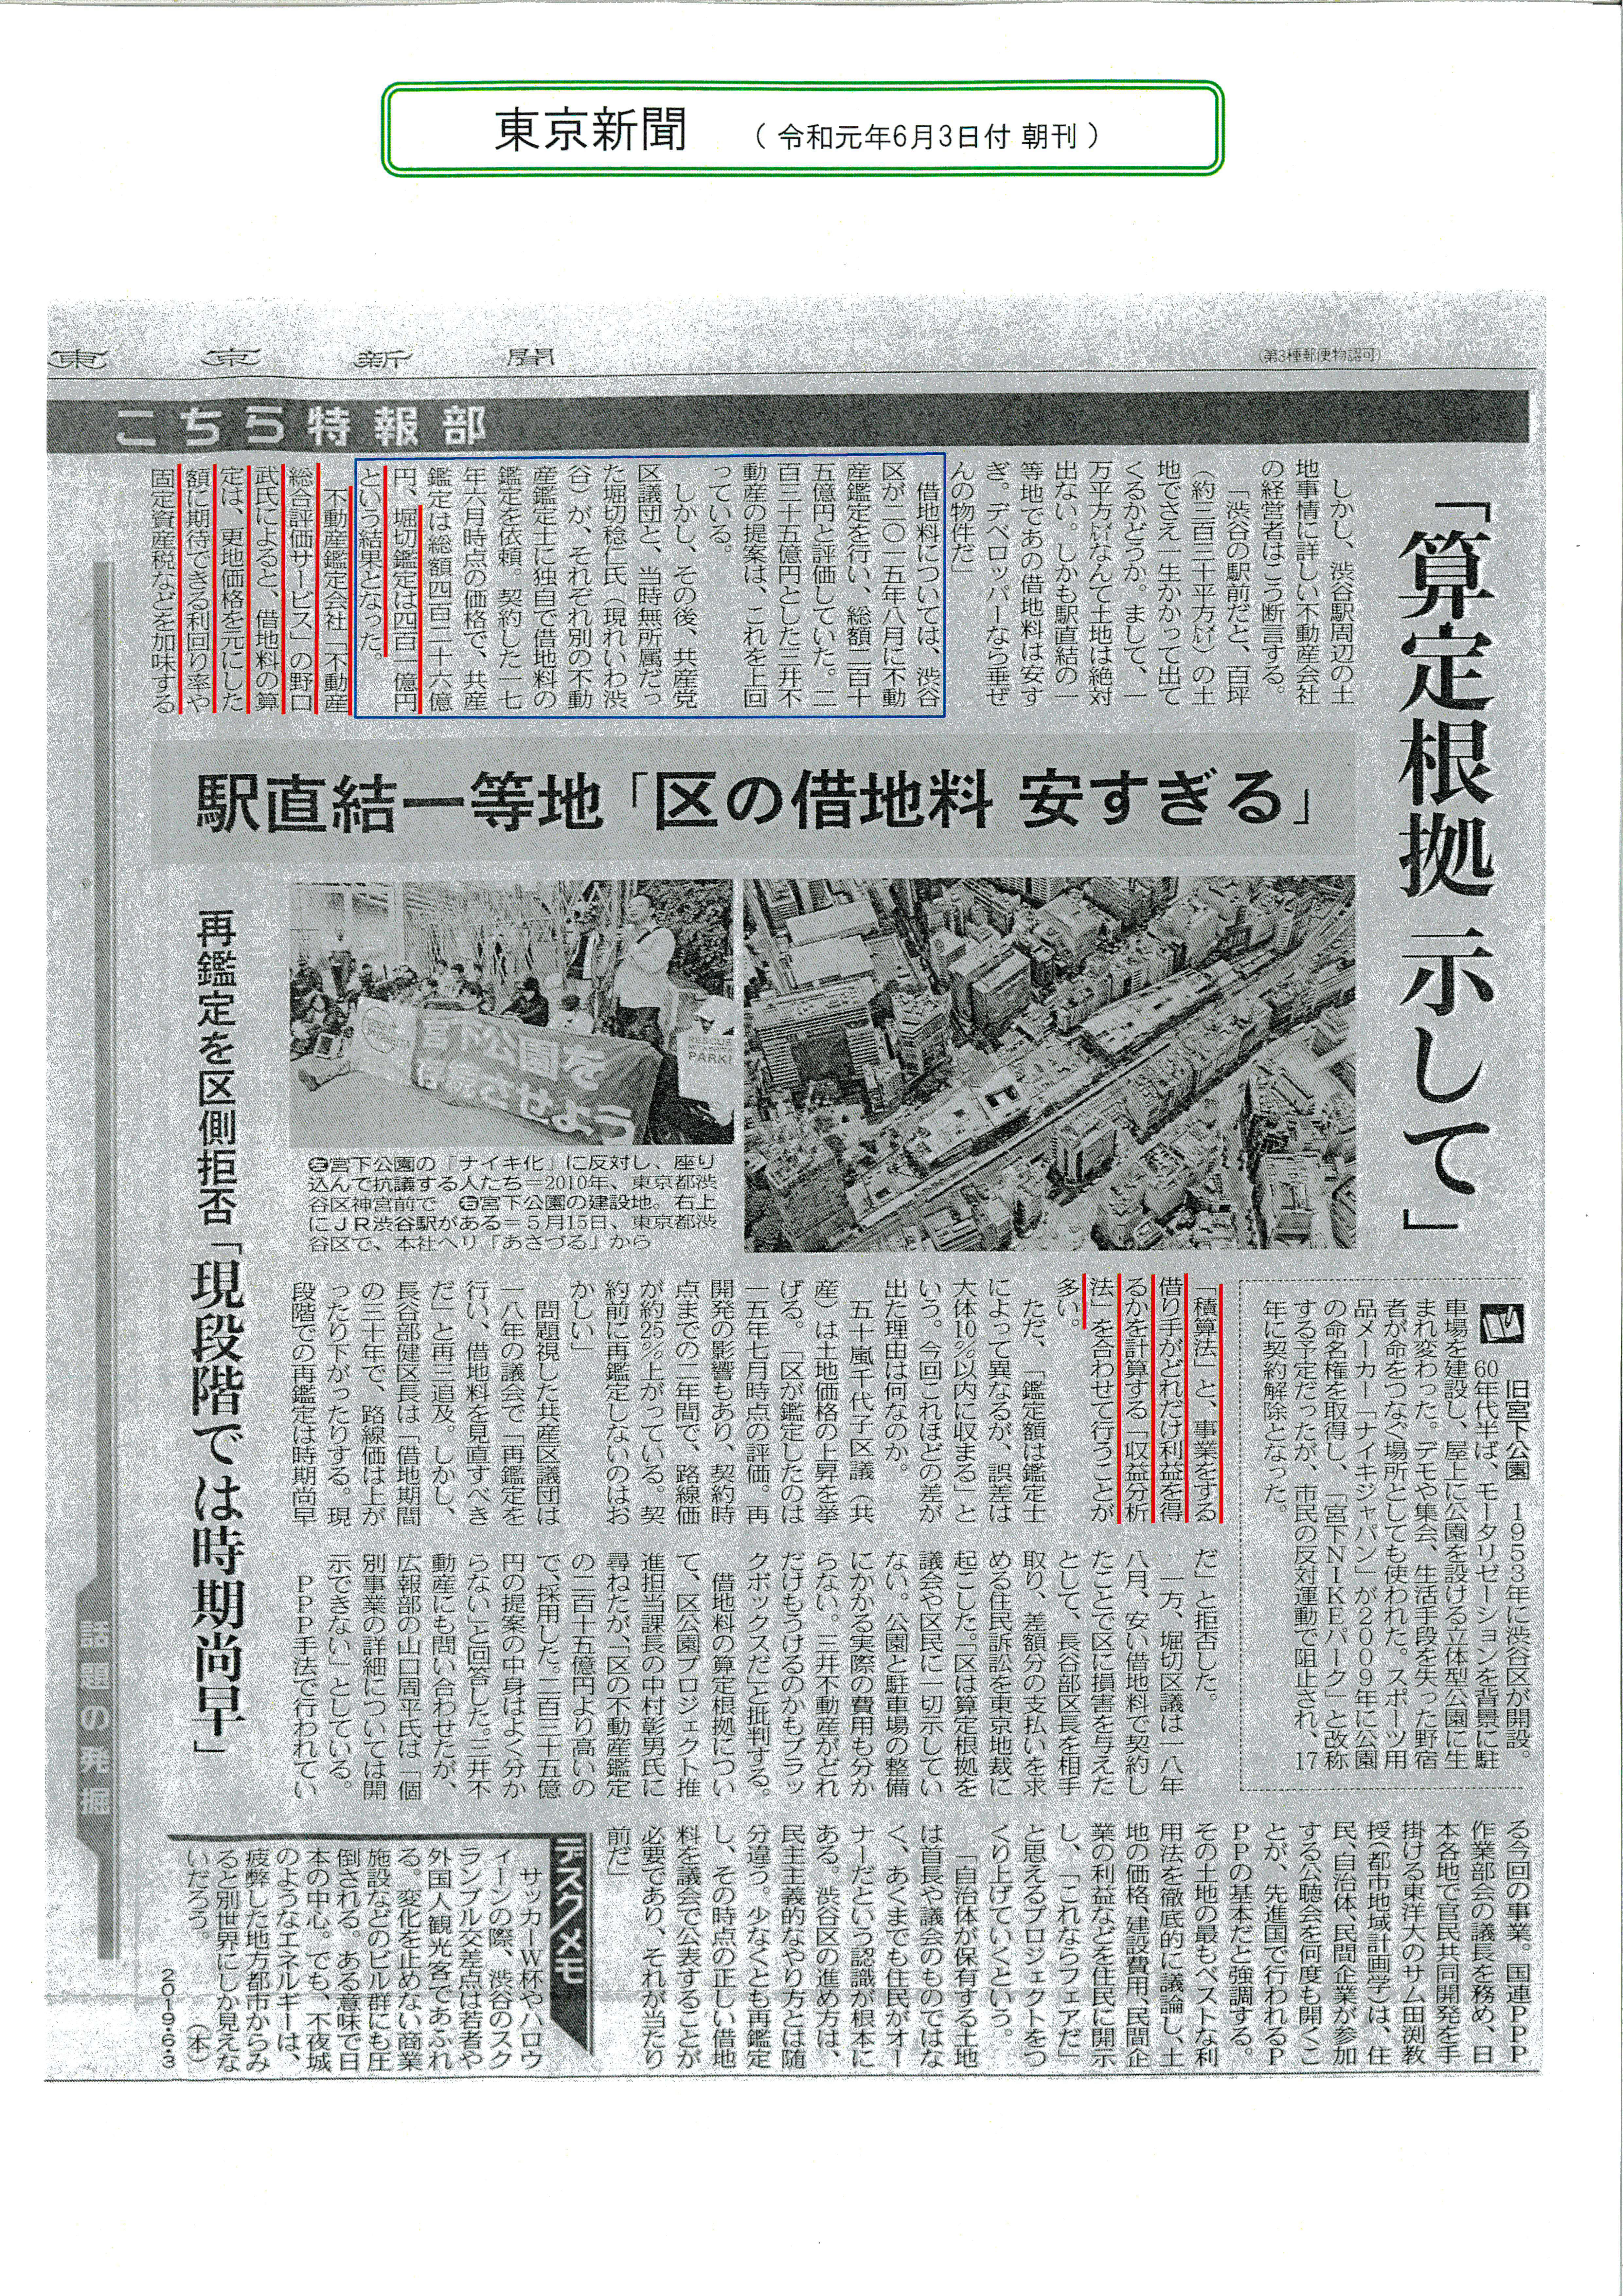 弊社の不動産鑑定士が東京新聞の取材に対してコメントし その内容が掲載されました Blog News 不動産総合評価サービス株式会社